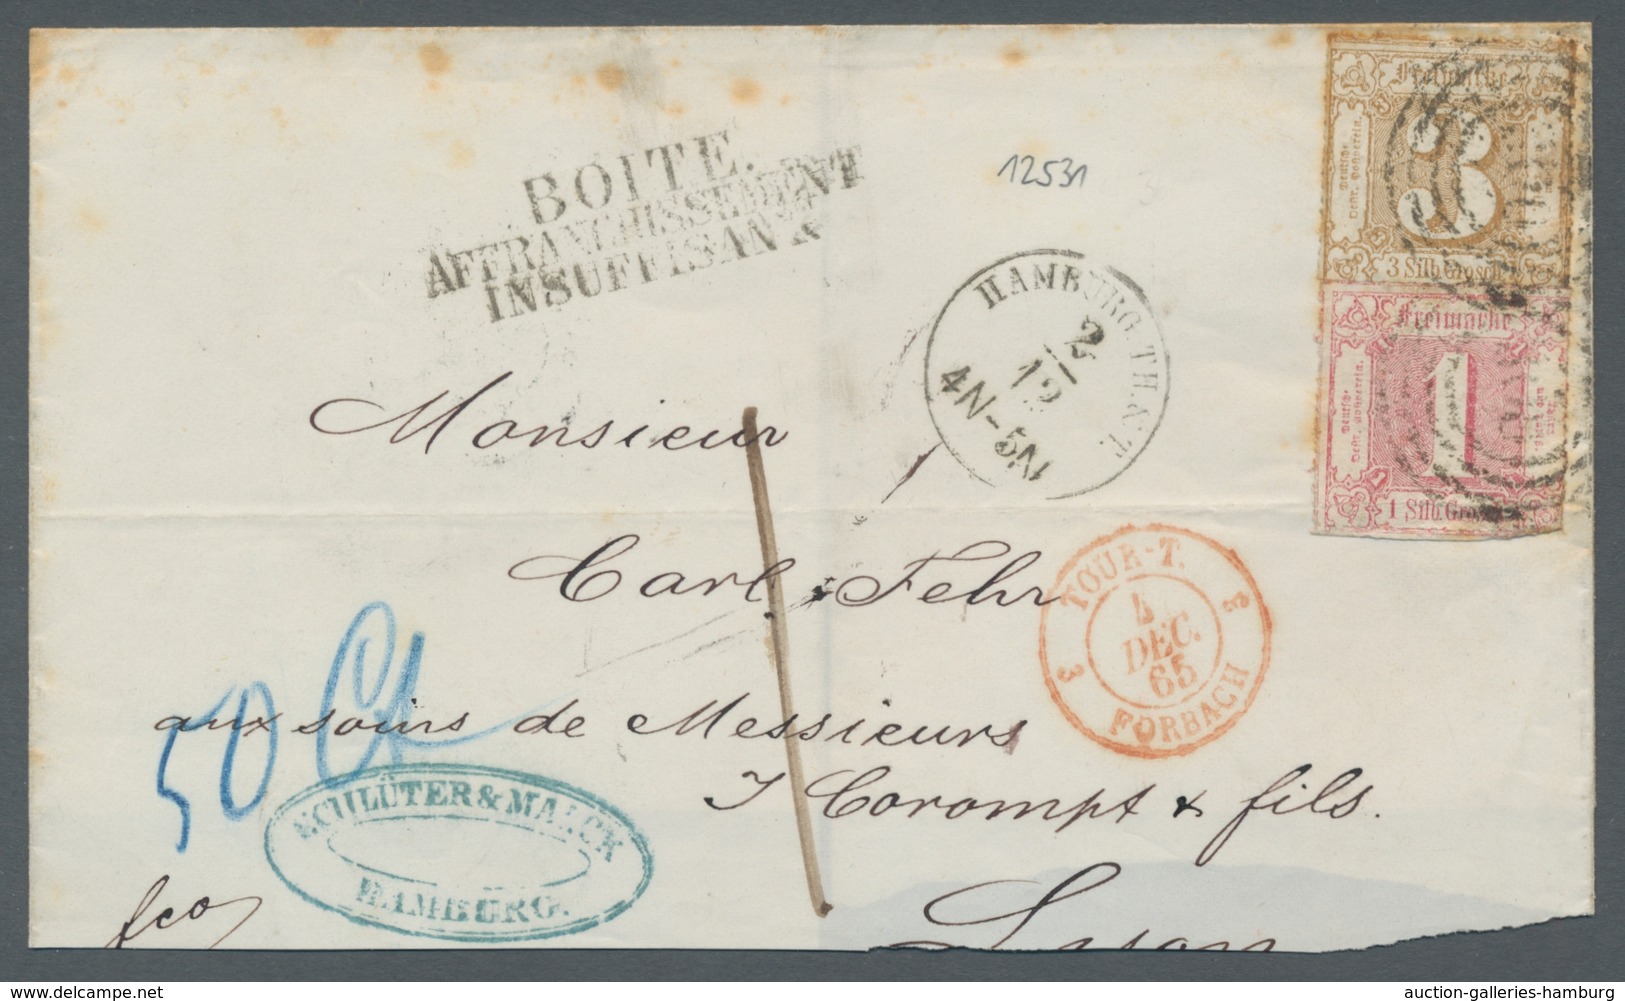 Hamburg - Thurn & Taxis'sches Postamt: 1865, Thurn Und Taxis, Mischfrankatur 1 Sgr. Und 3 Sgr., Farb - Hambourg